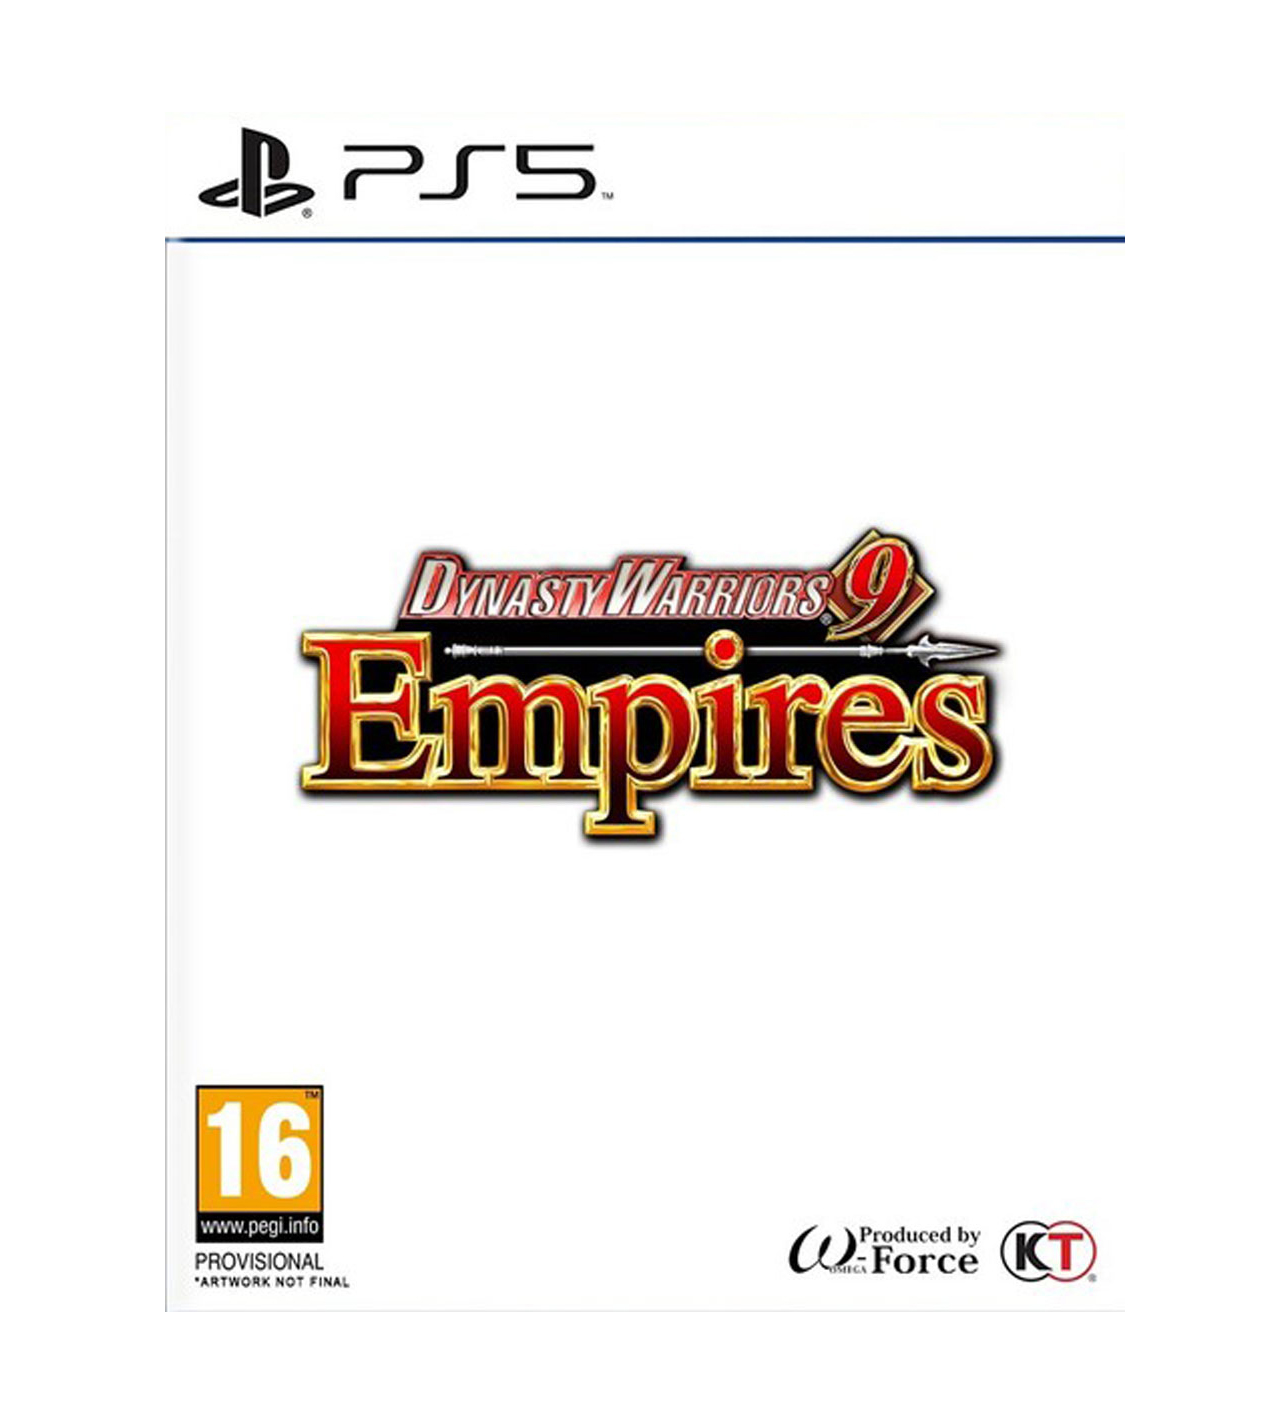 PS5 Dynasty Warriors 9 - Empires igrica za Sony Playstation 5